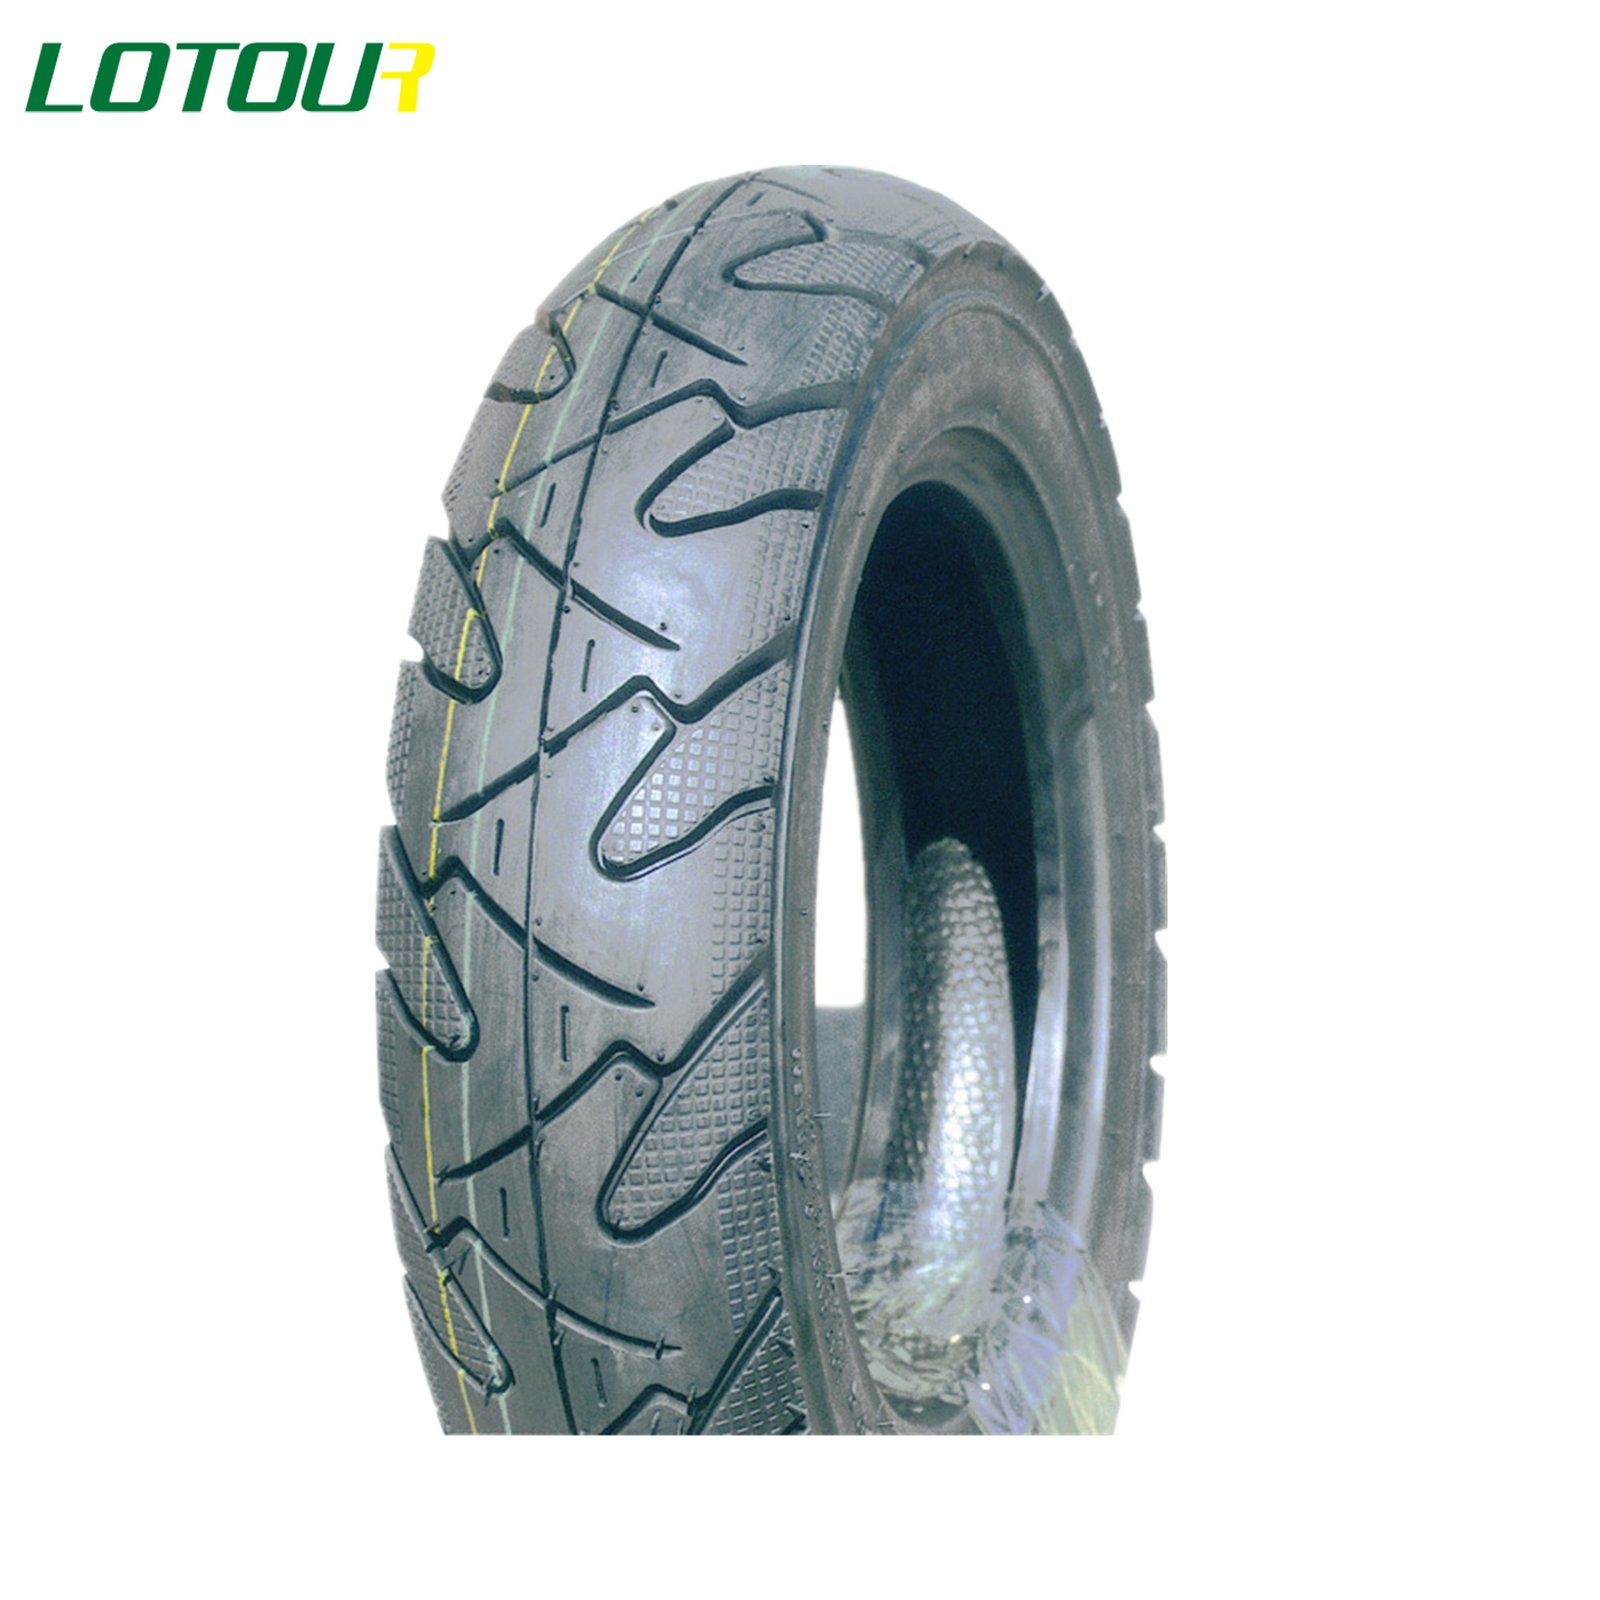 Lotour Tire M3001